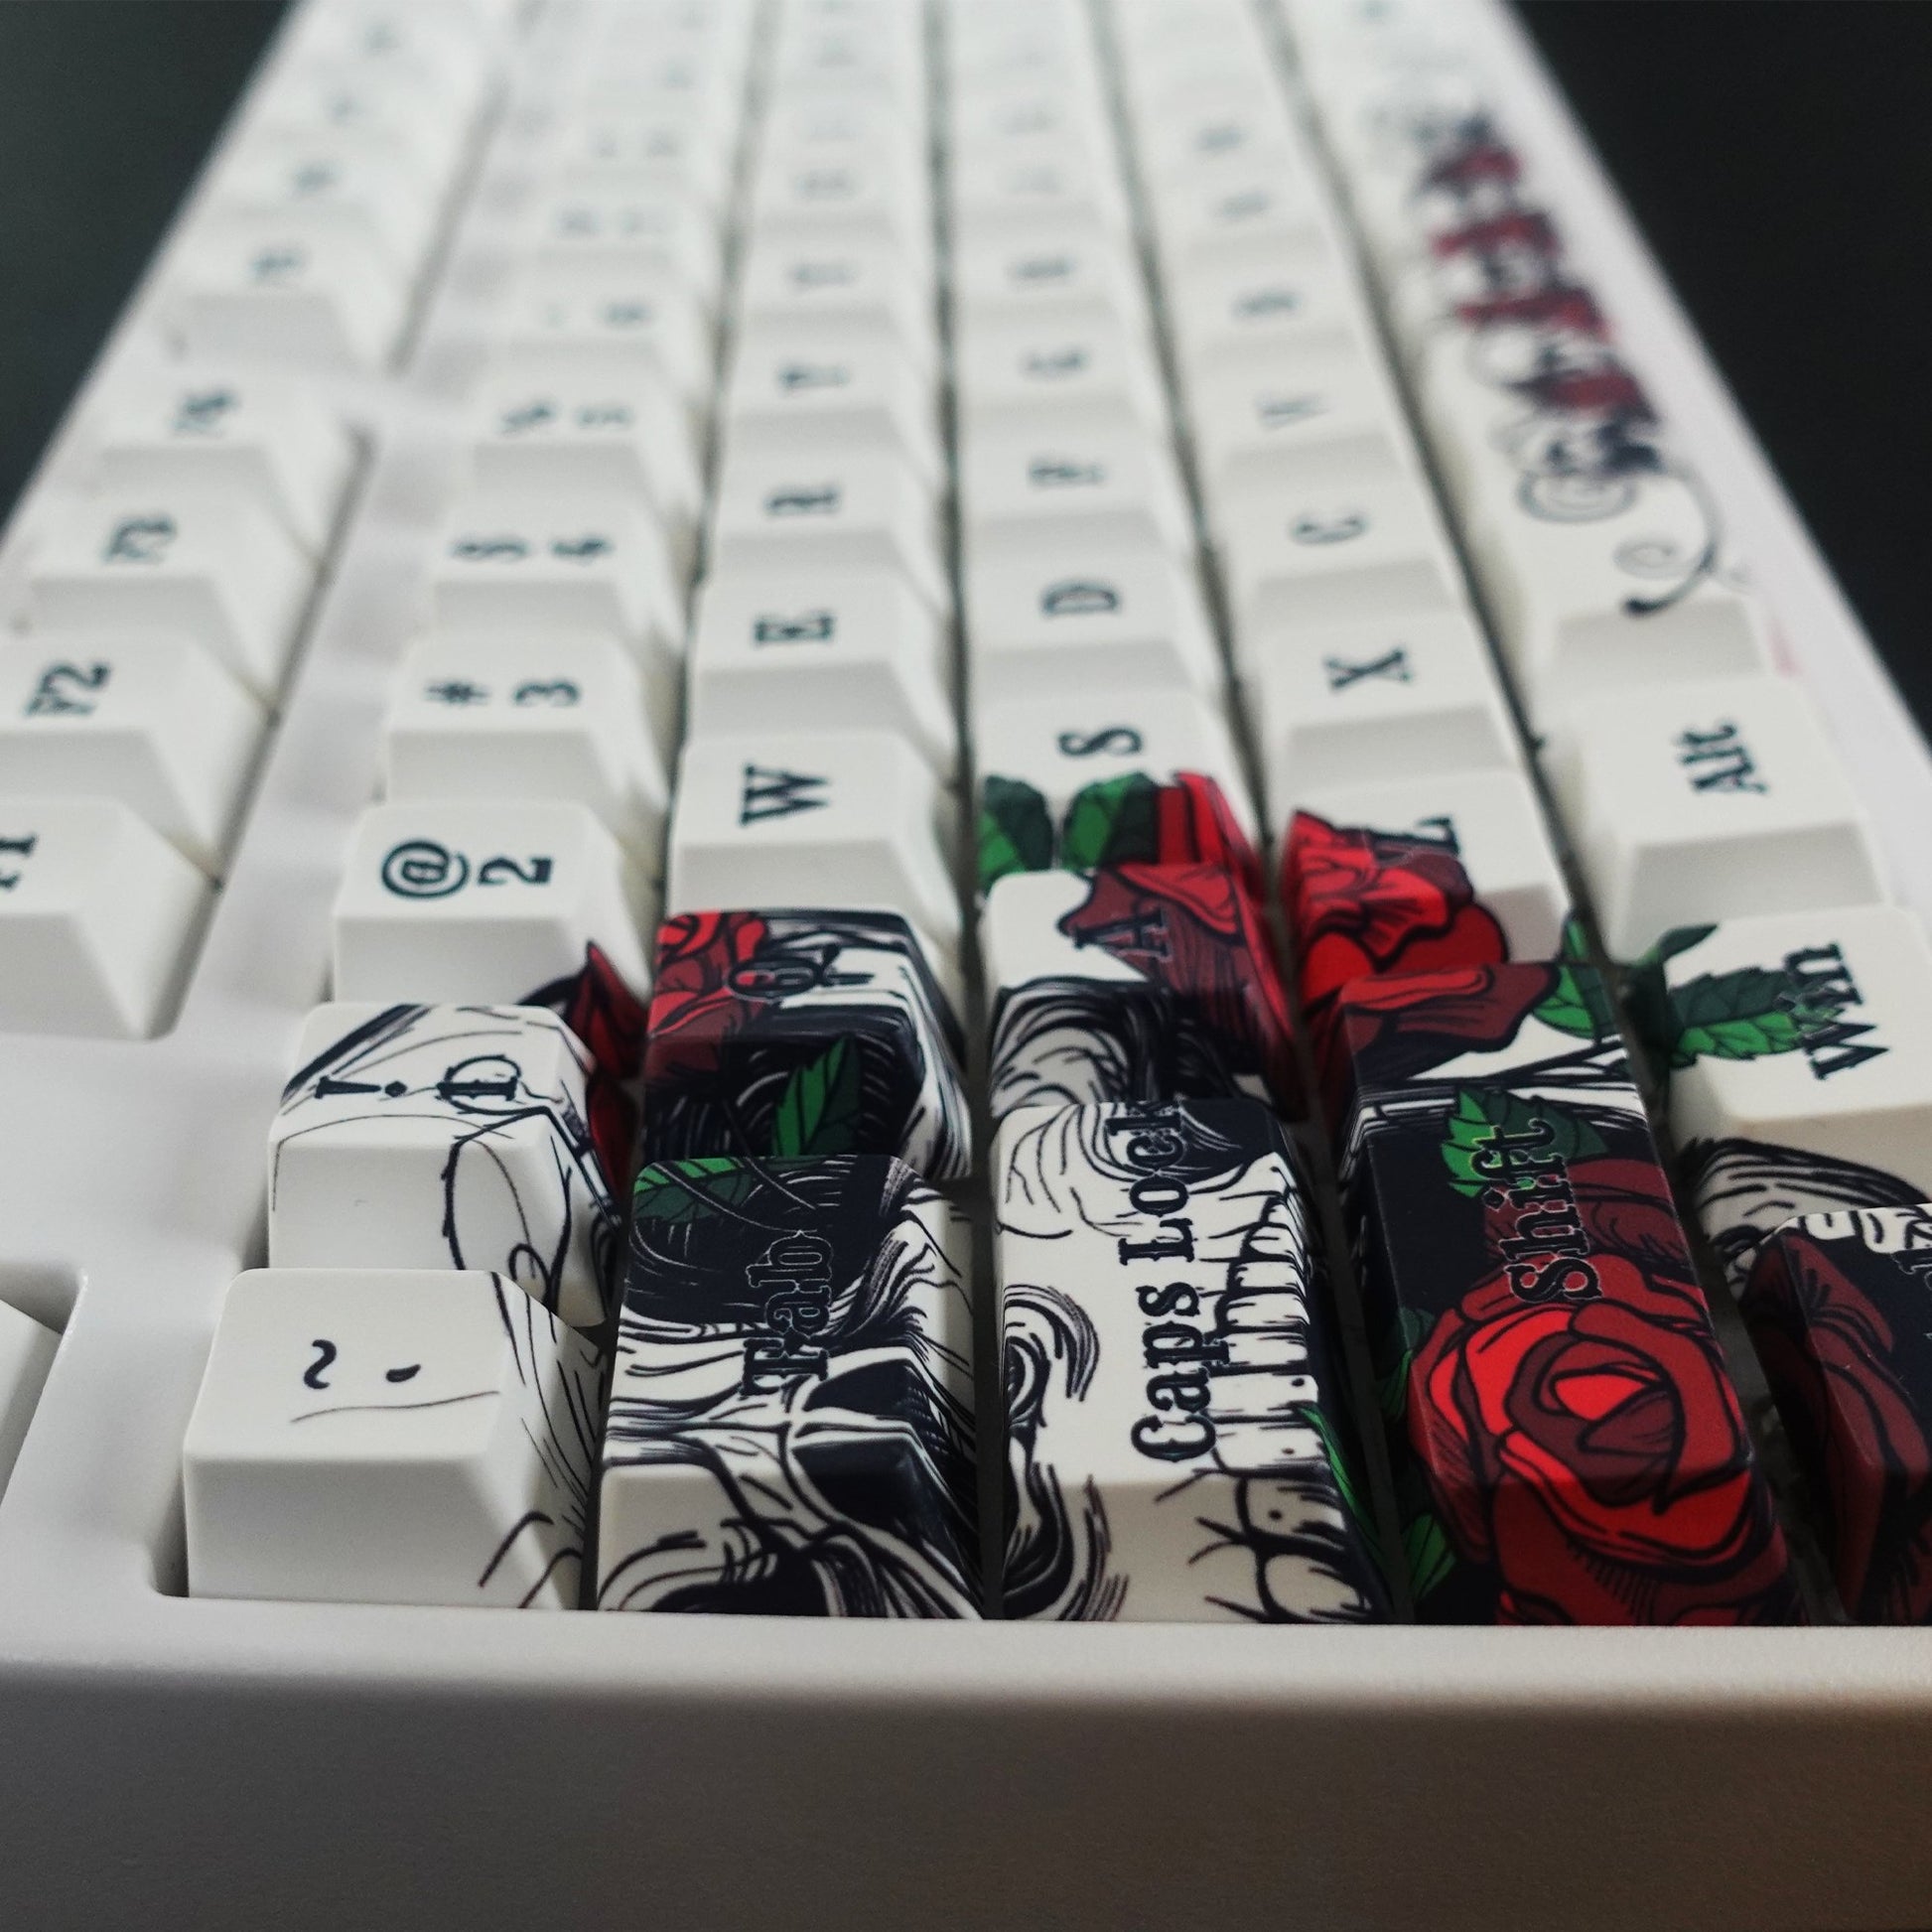 Skull & Roses Keycaps - Goblintechkeys